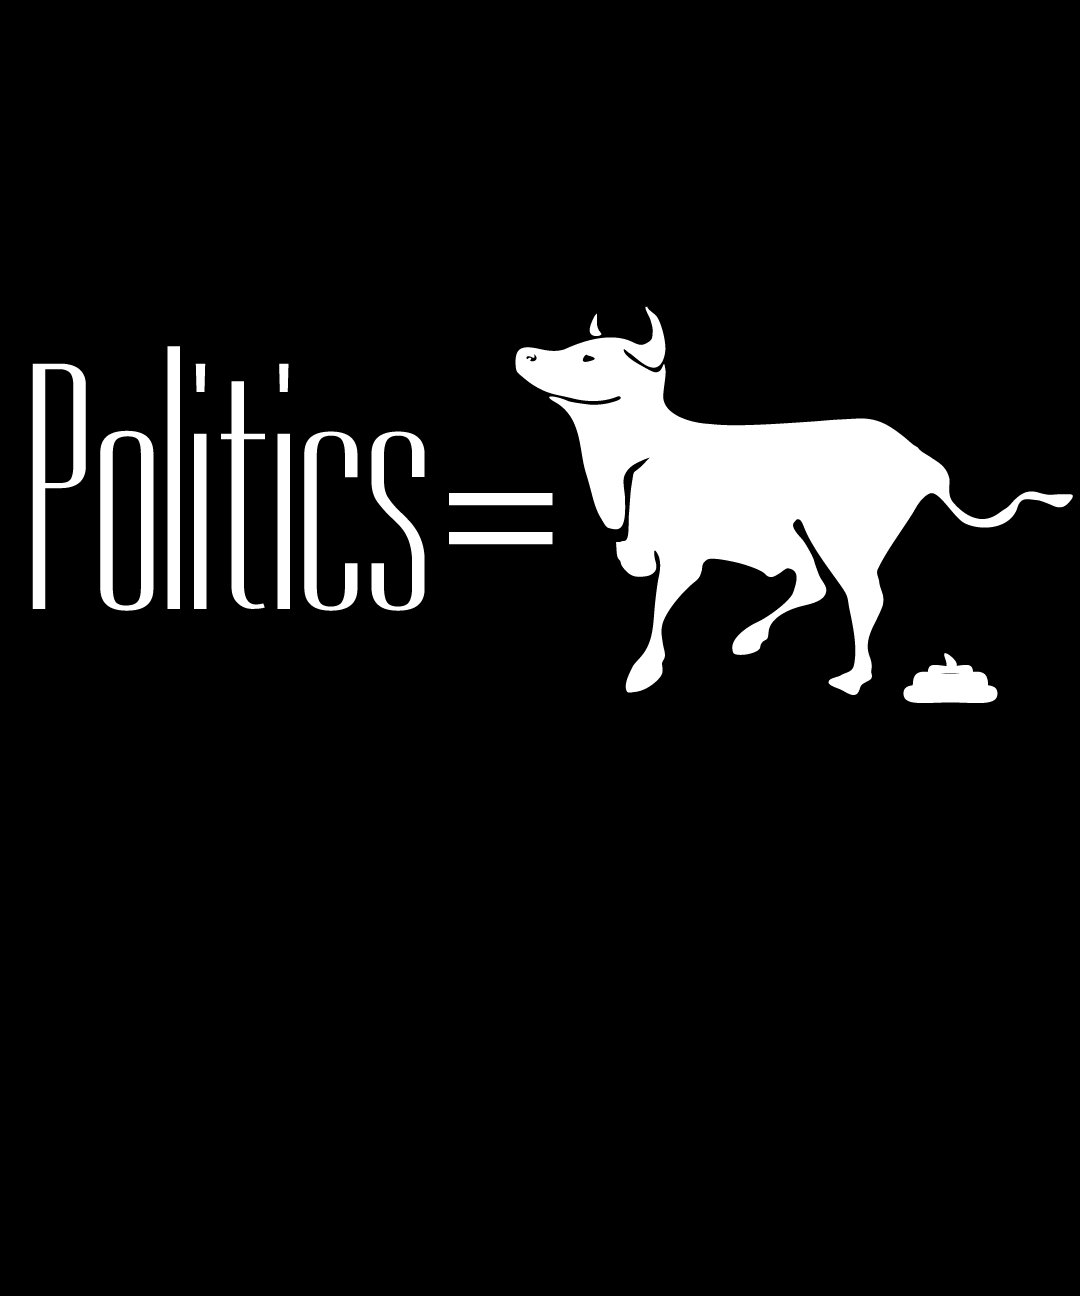 Politics equals BULLSHIT Unisex t-shirt